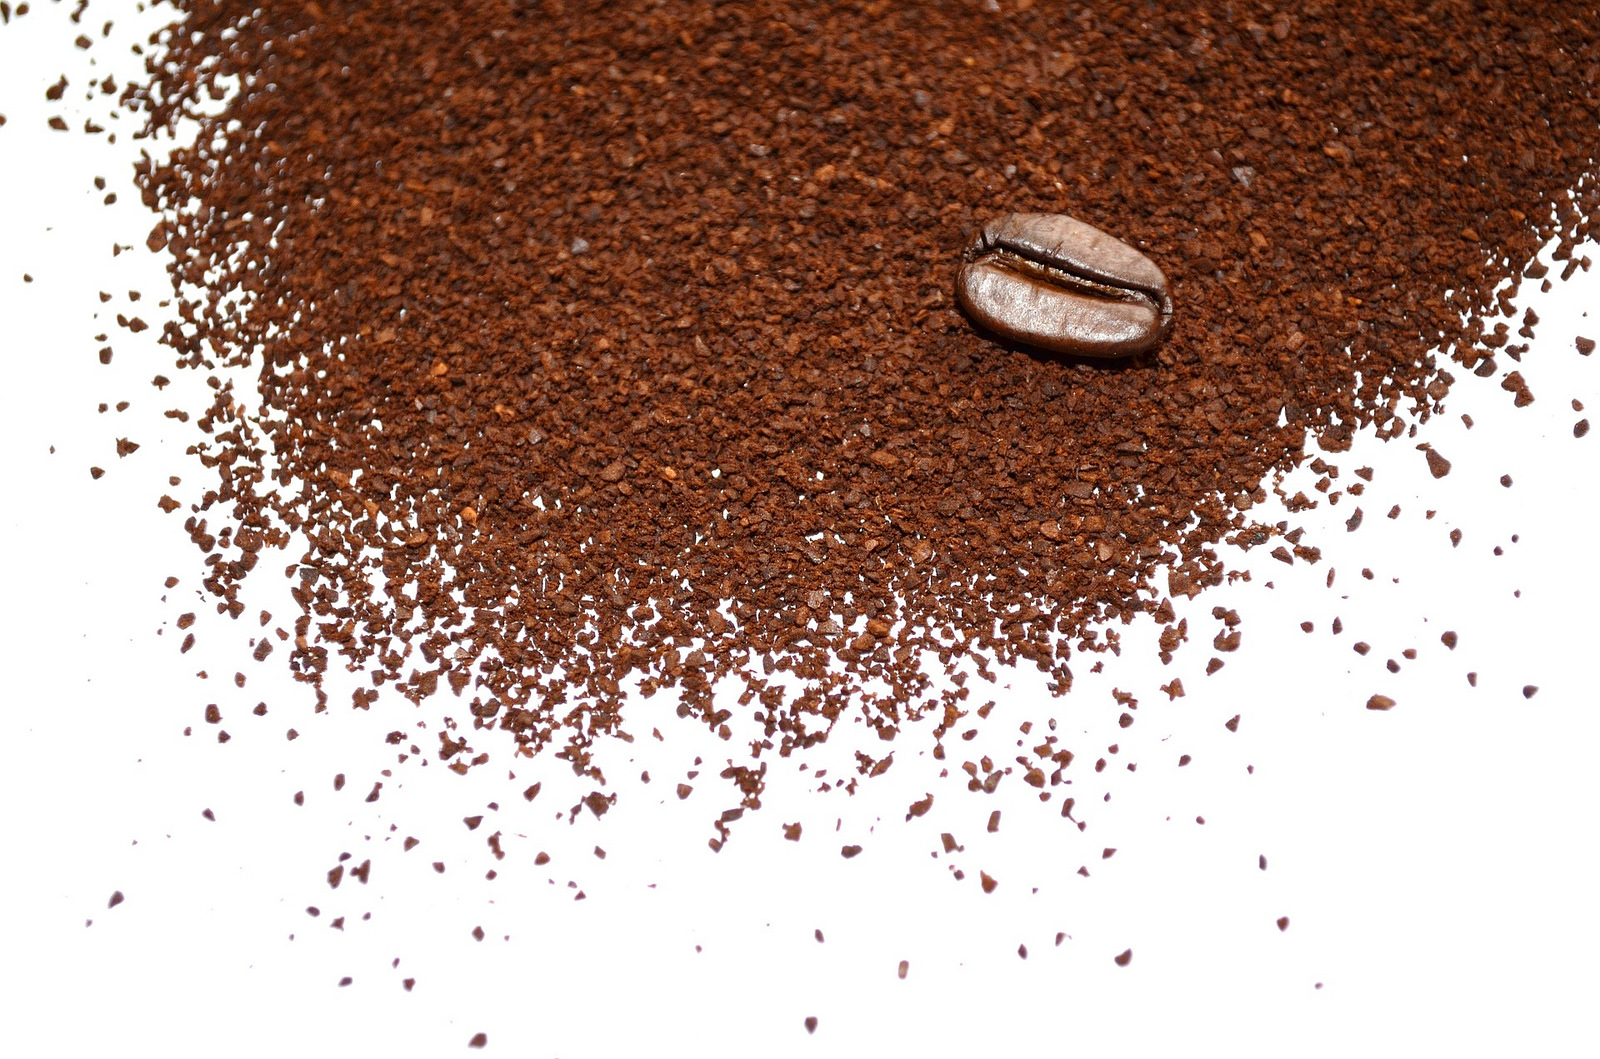 Otros usos del café molido desconocidos